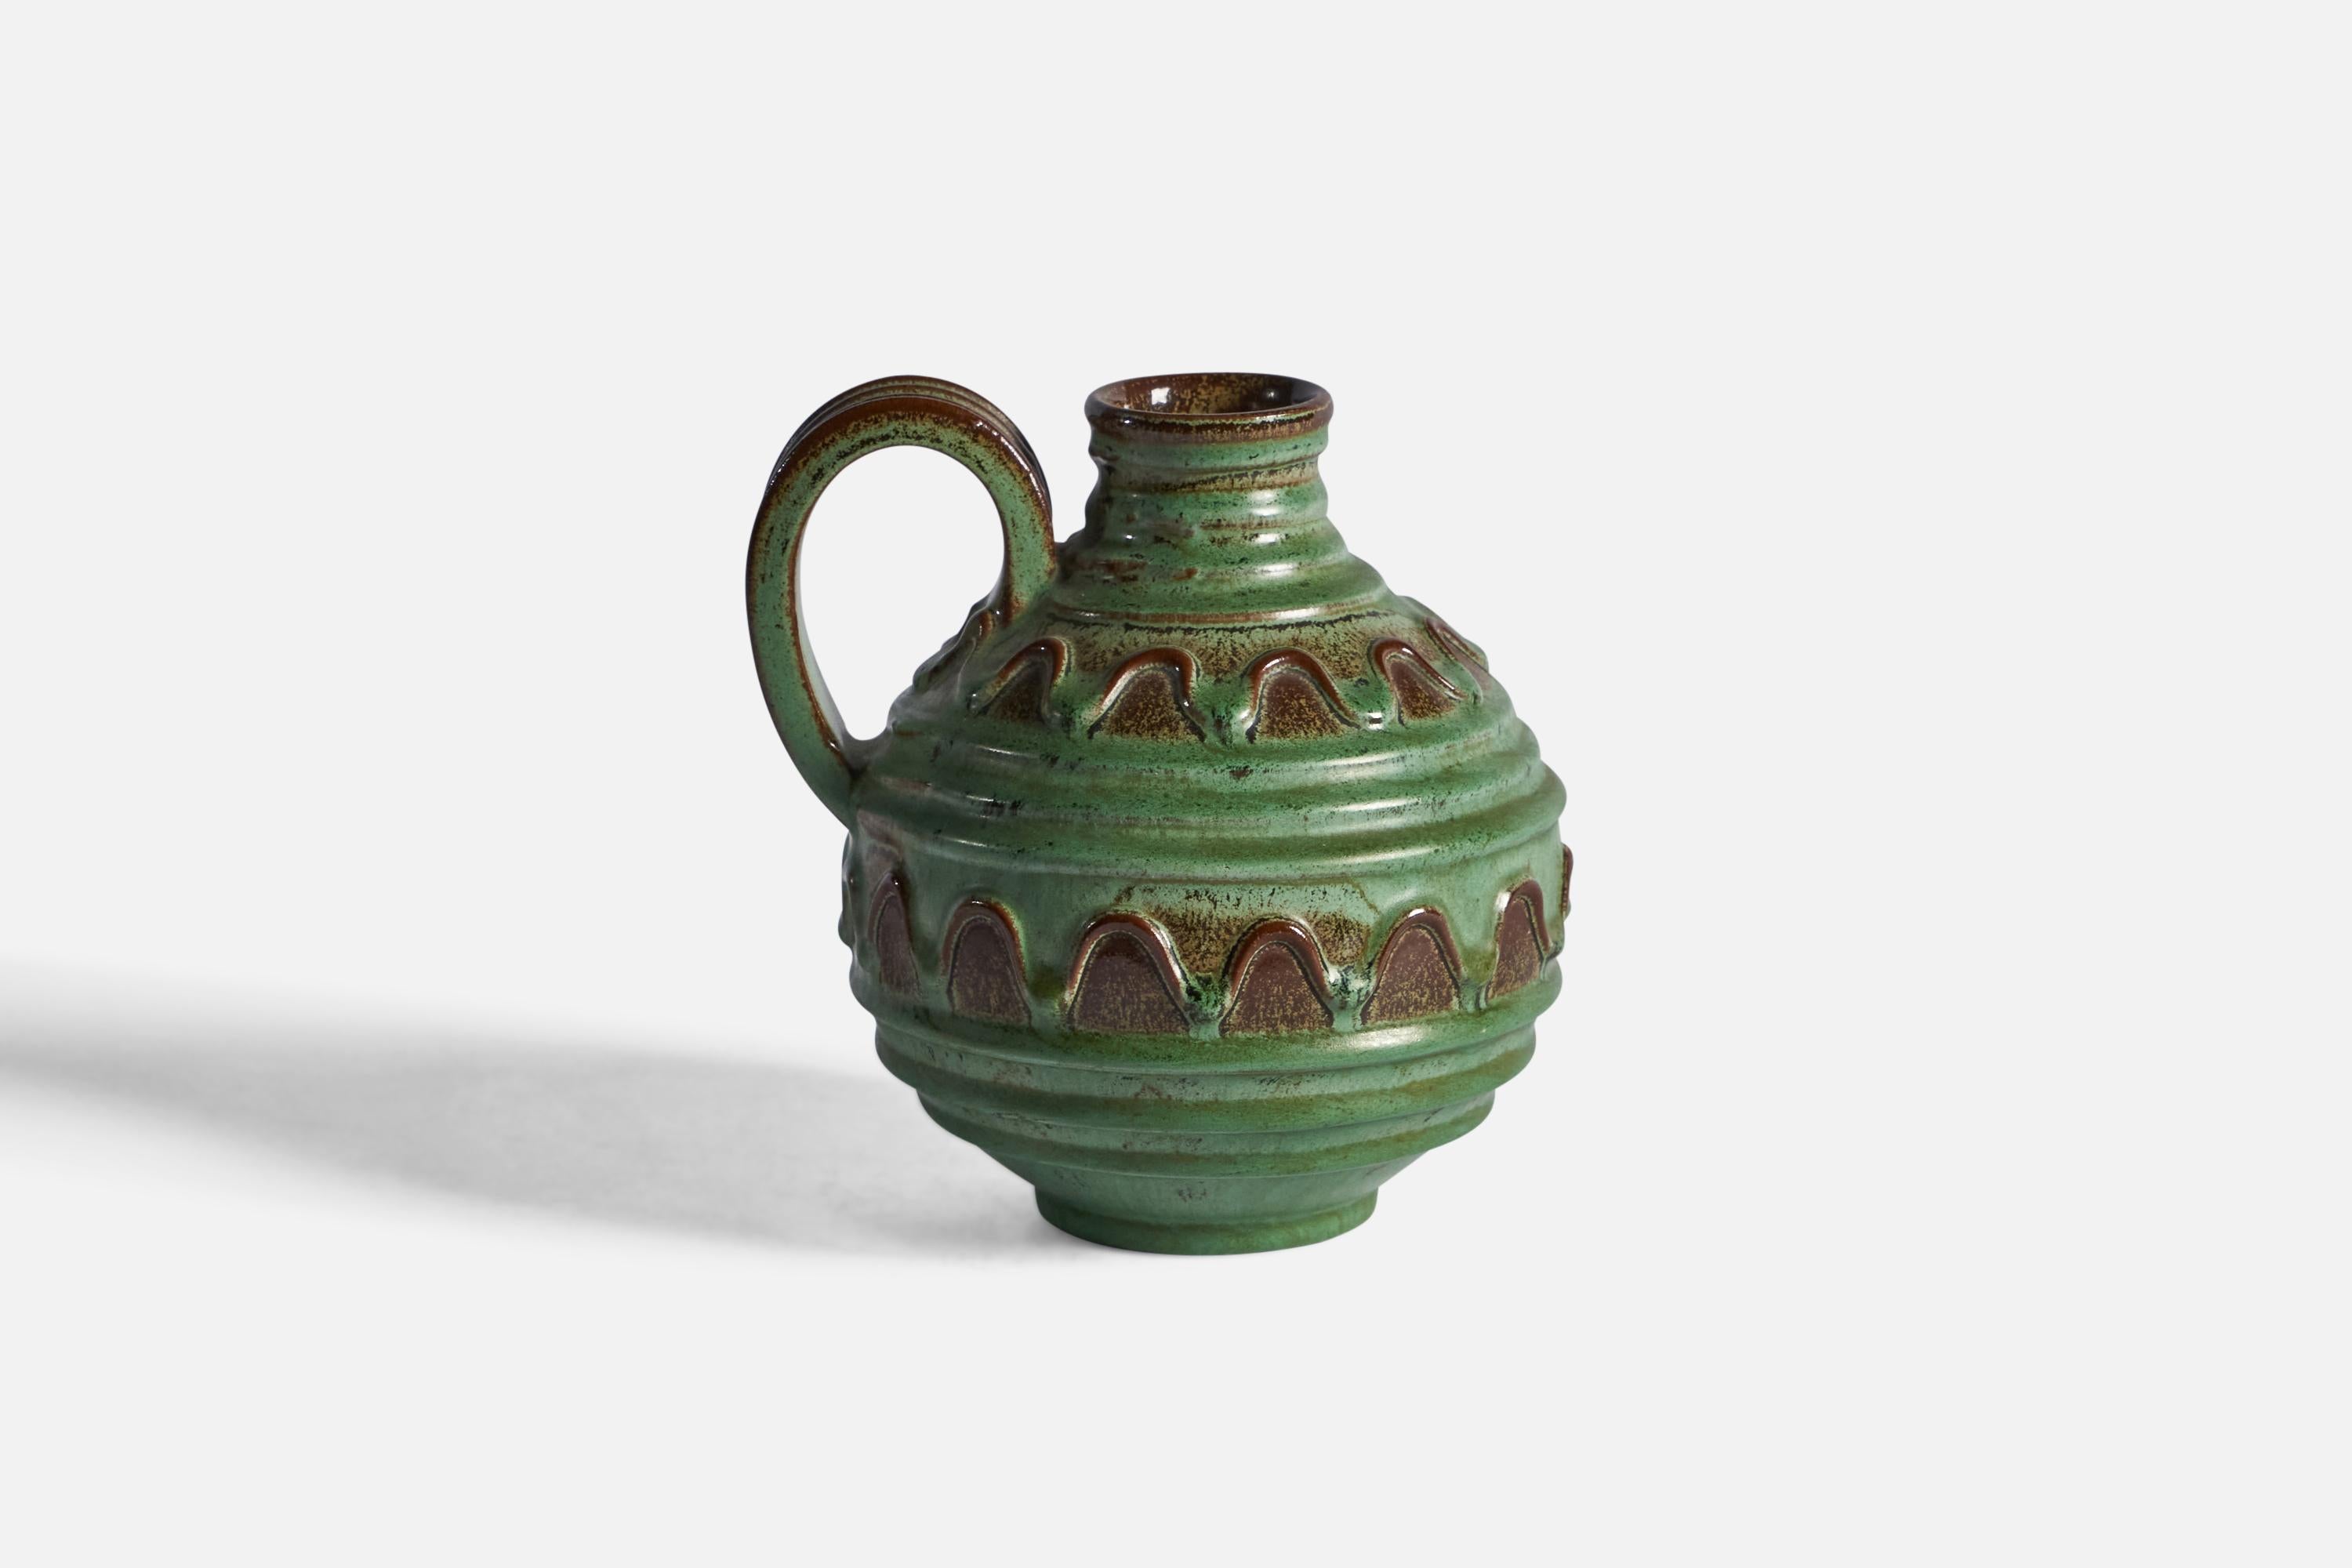 Pichet ou vase à glaçure verte et brune conçu par Erik Mornils et produit par Nittsjö, Suède, années 1930.